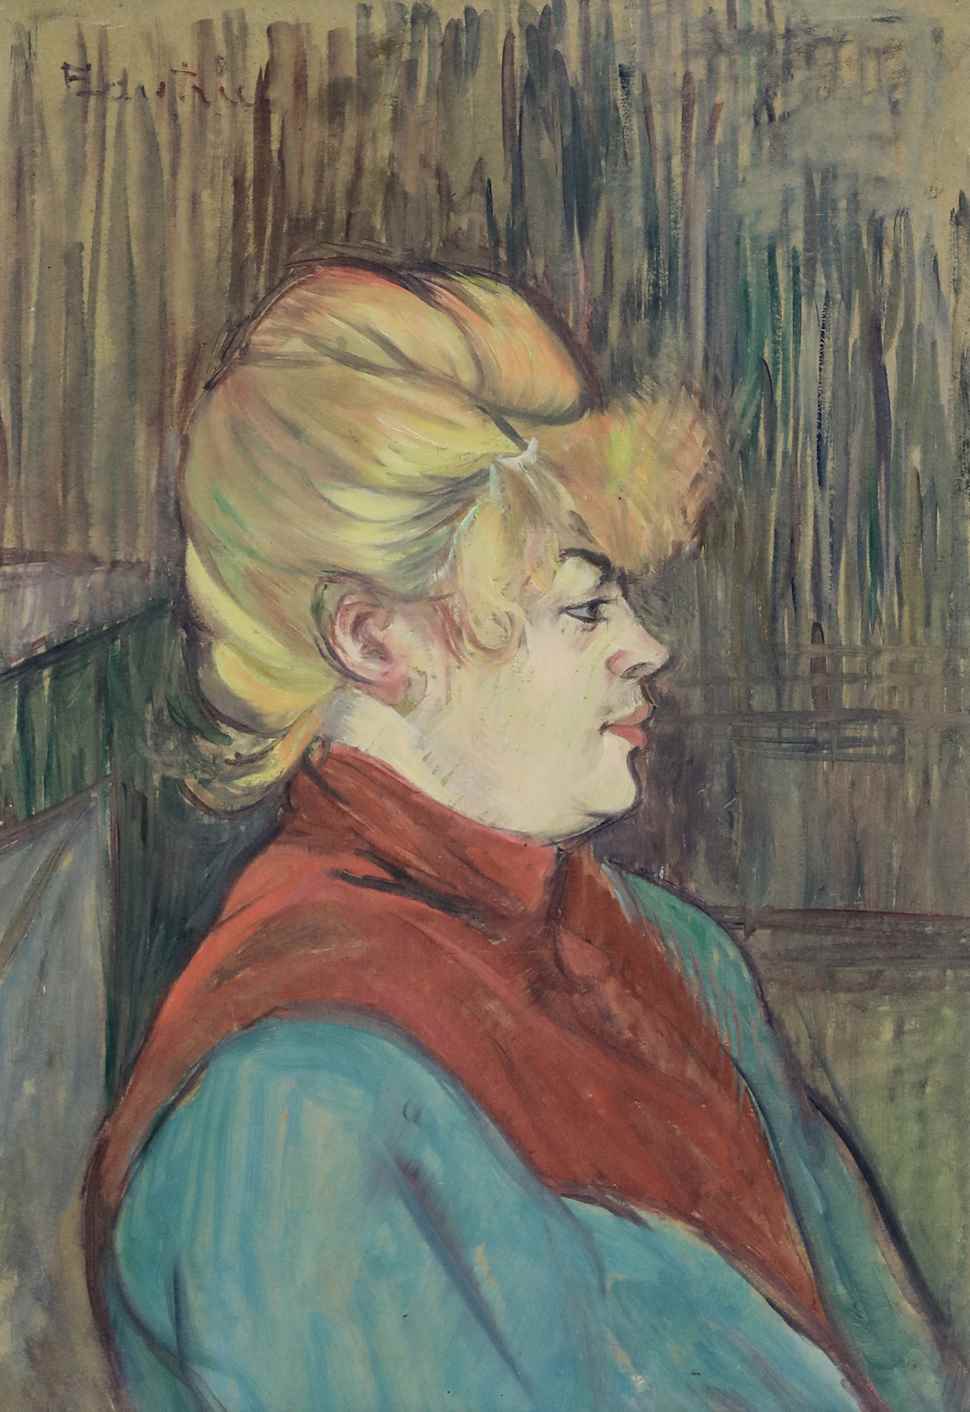 Femme de Maison - Henri de Toulouse-Lautrec (1864 - 1901)